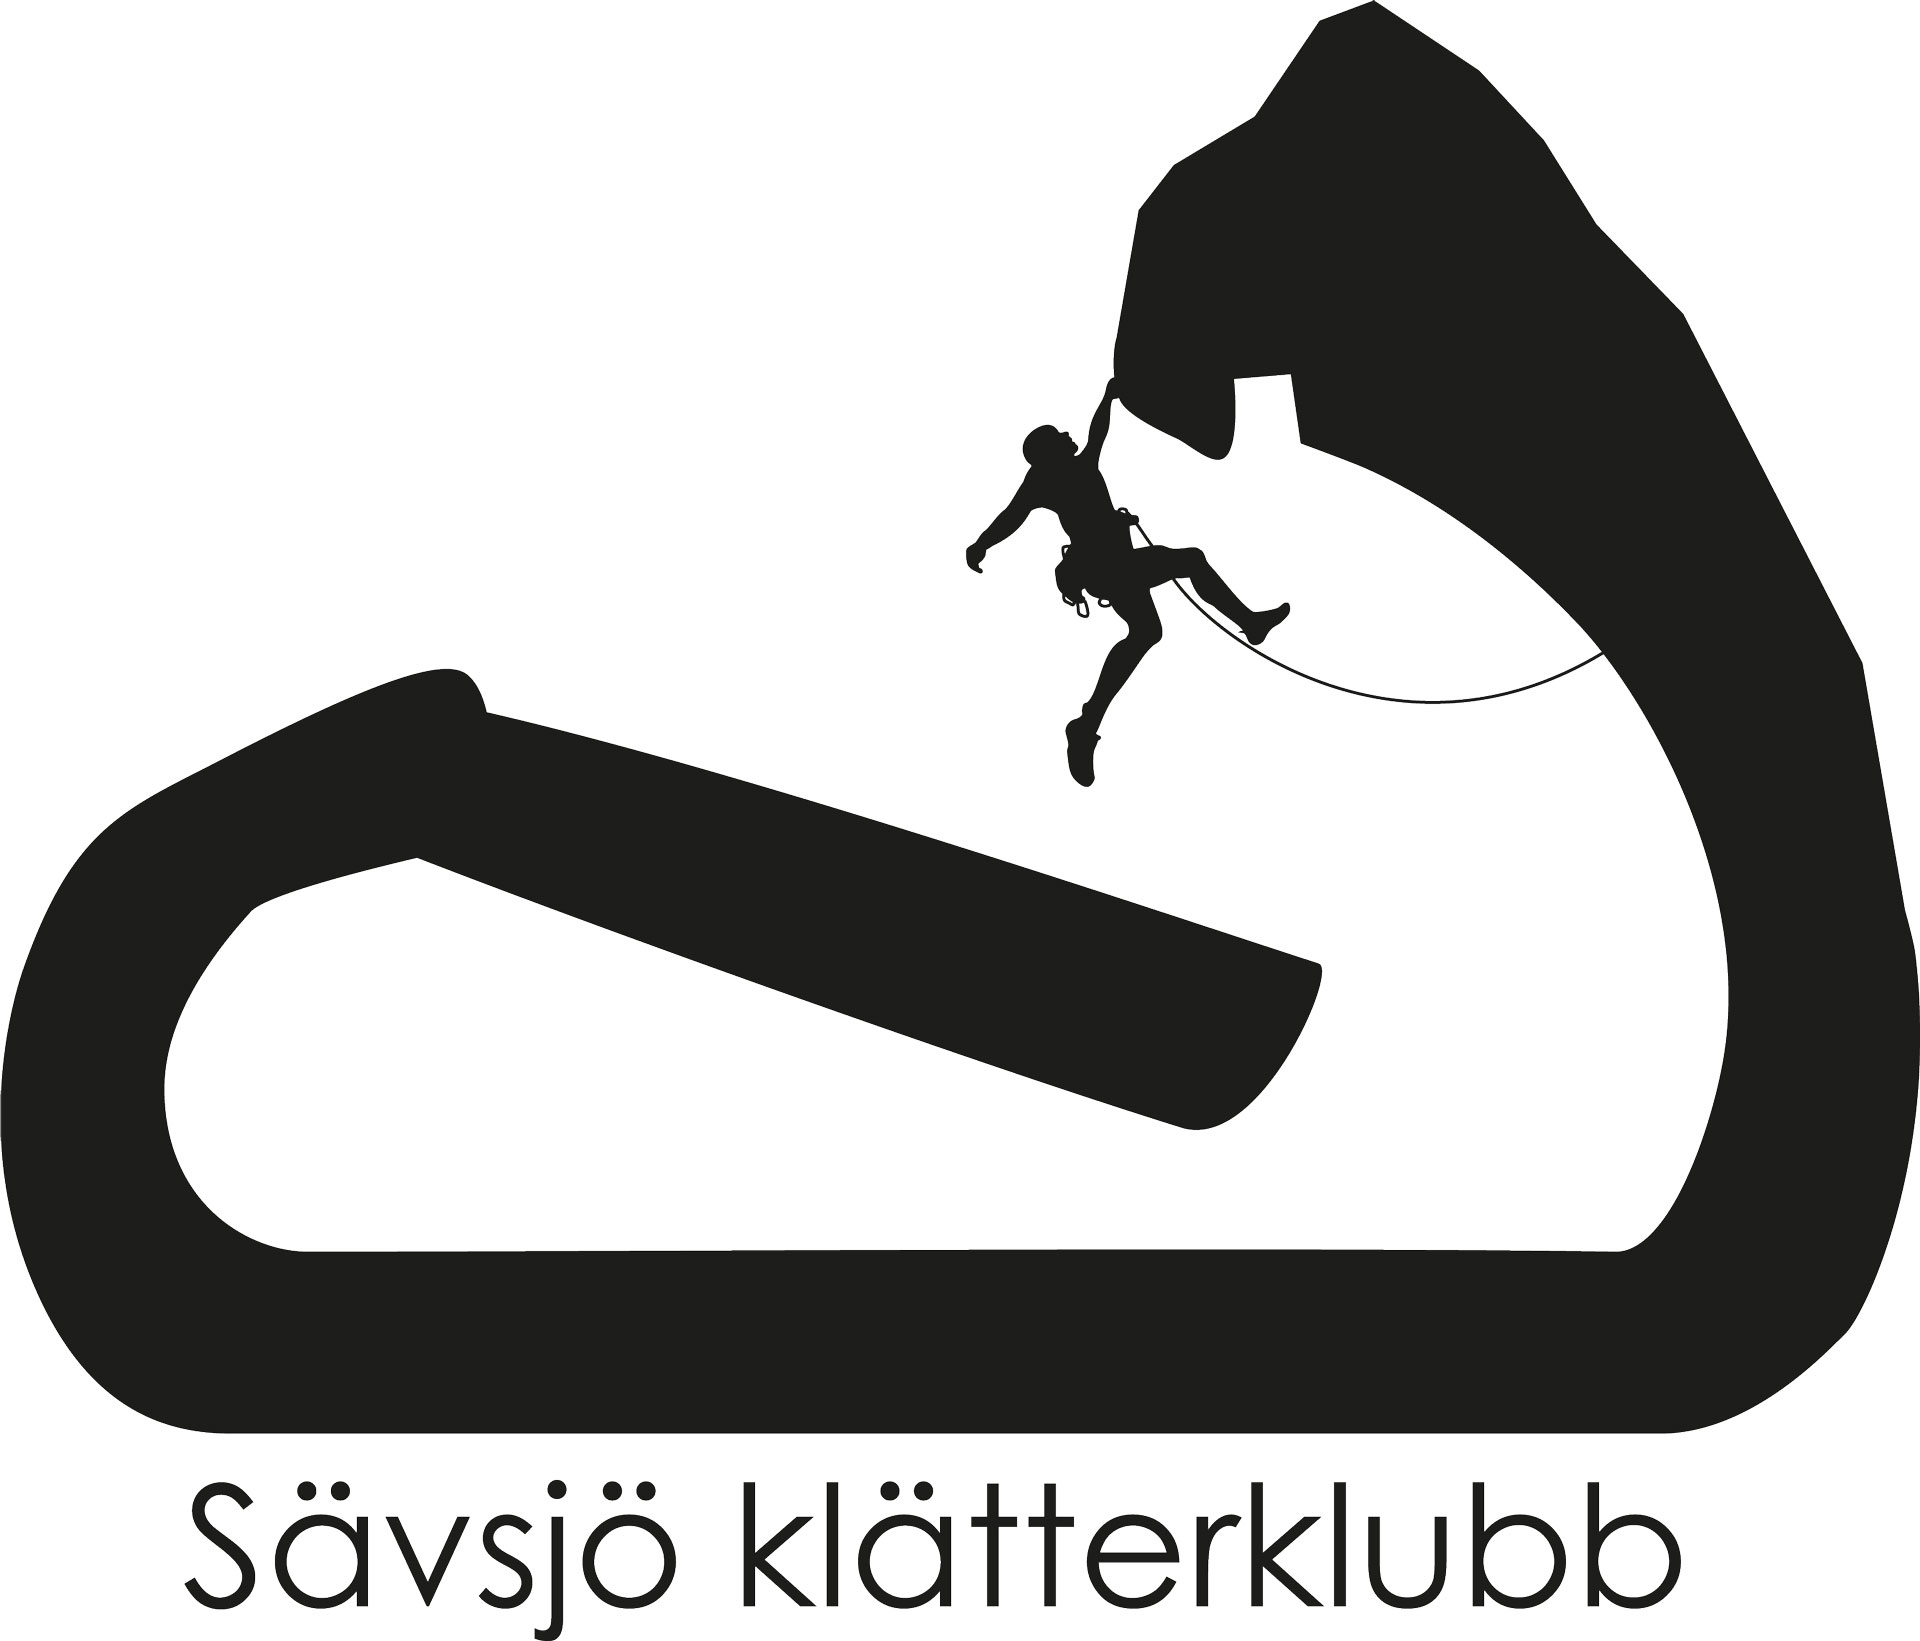 Sävsjö klätterklubb